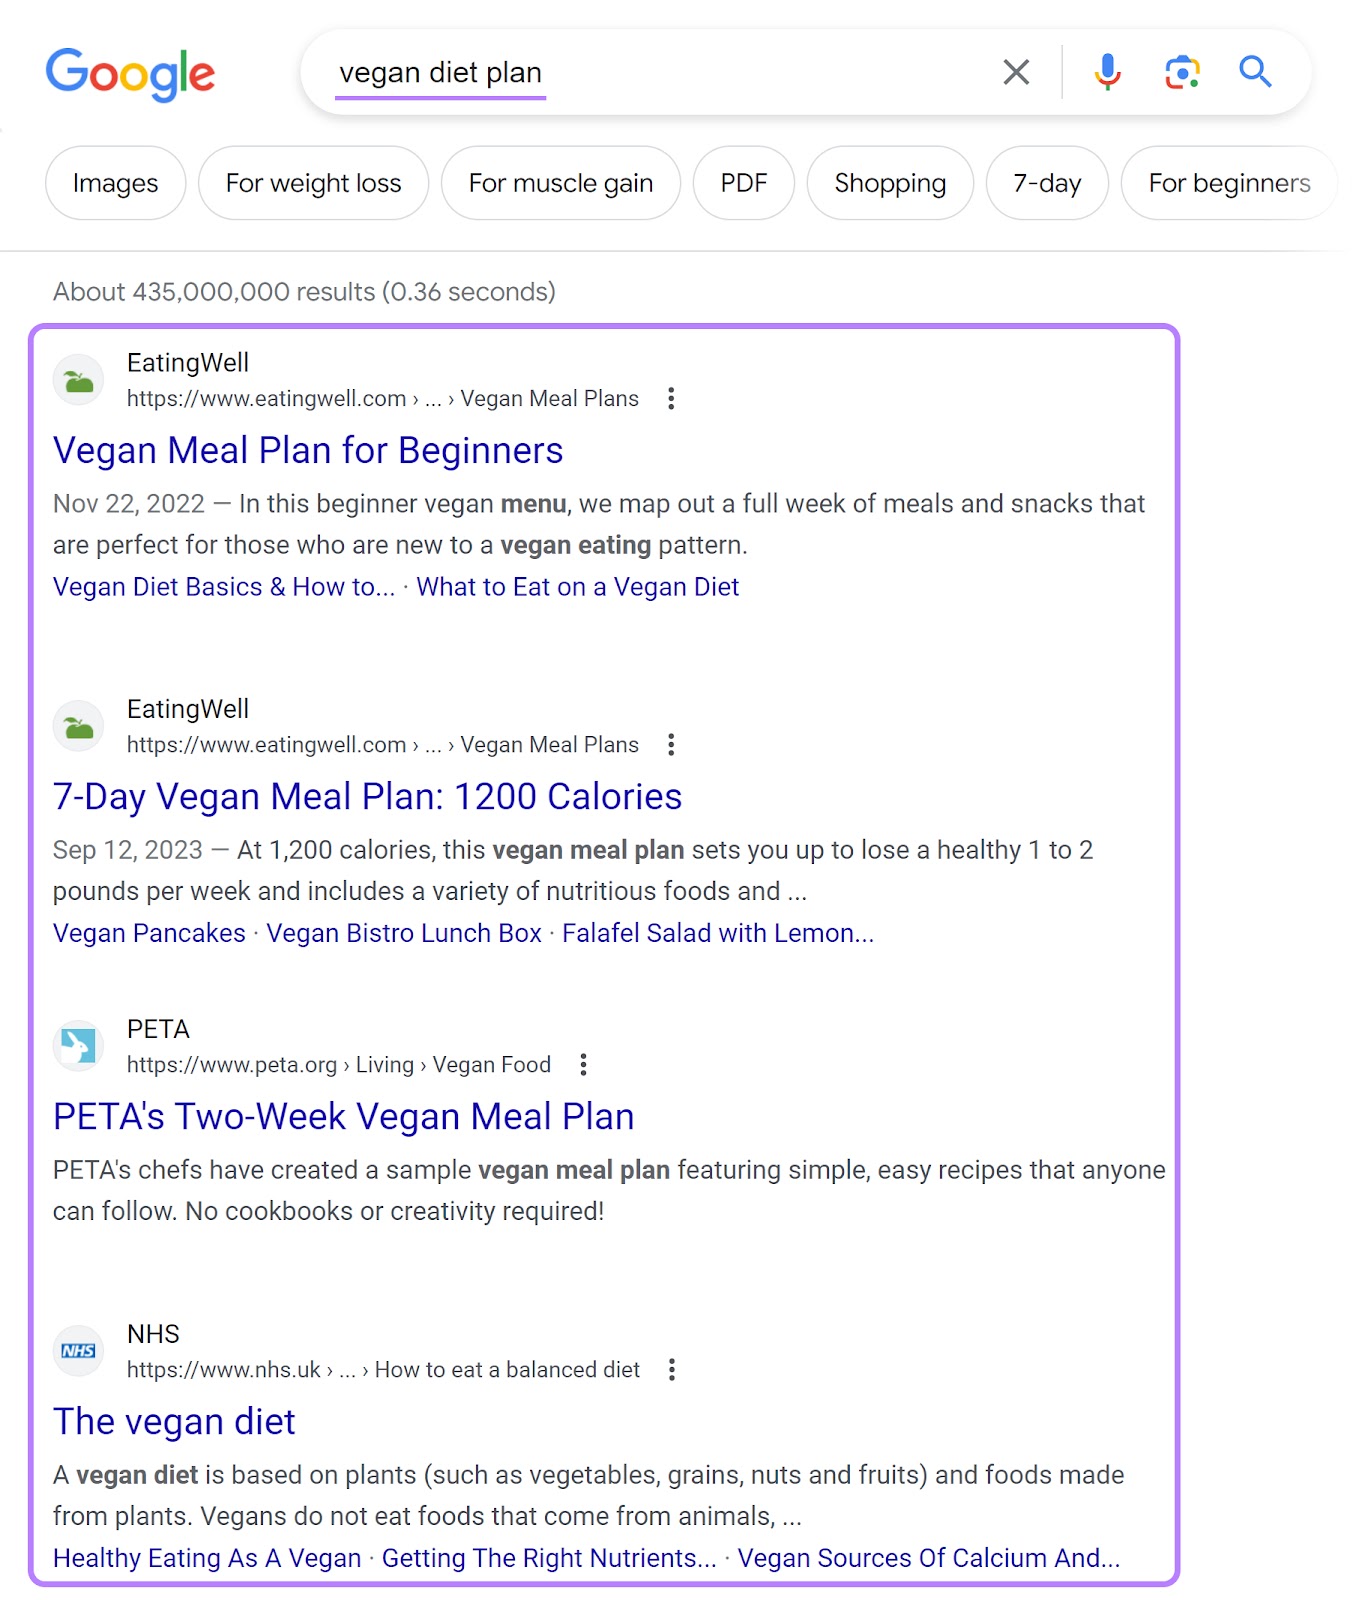 Google's SERP for “vegan diet plan” query